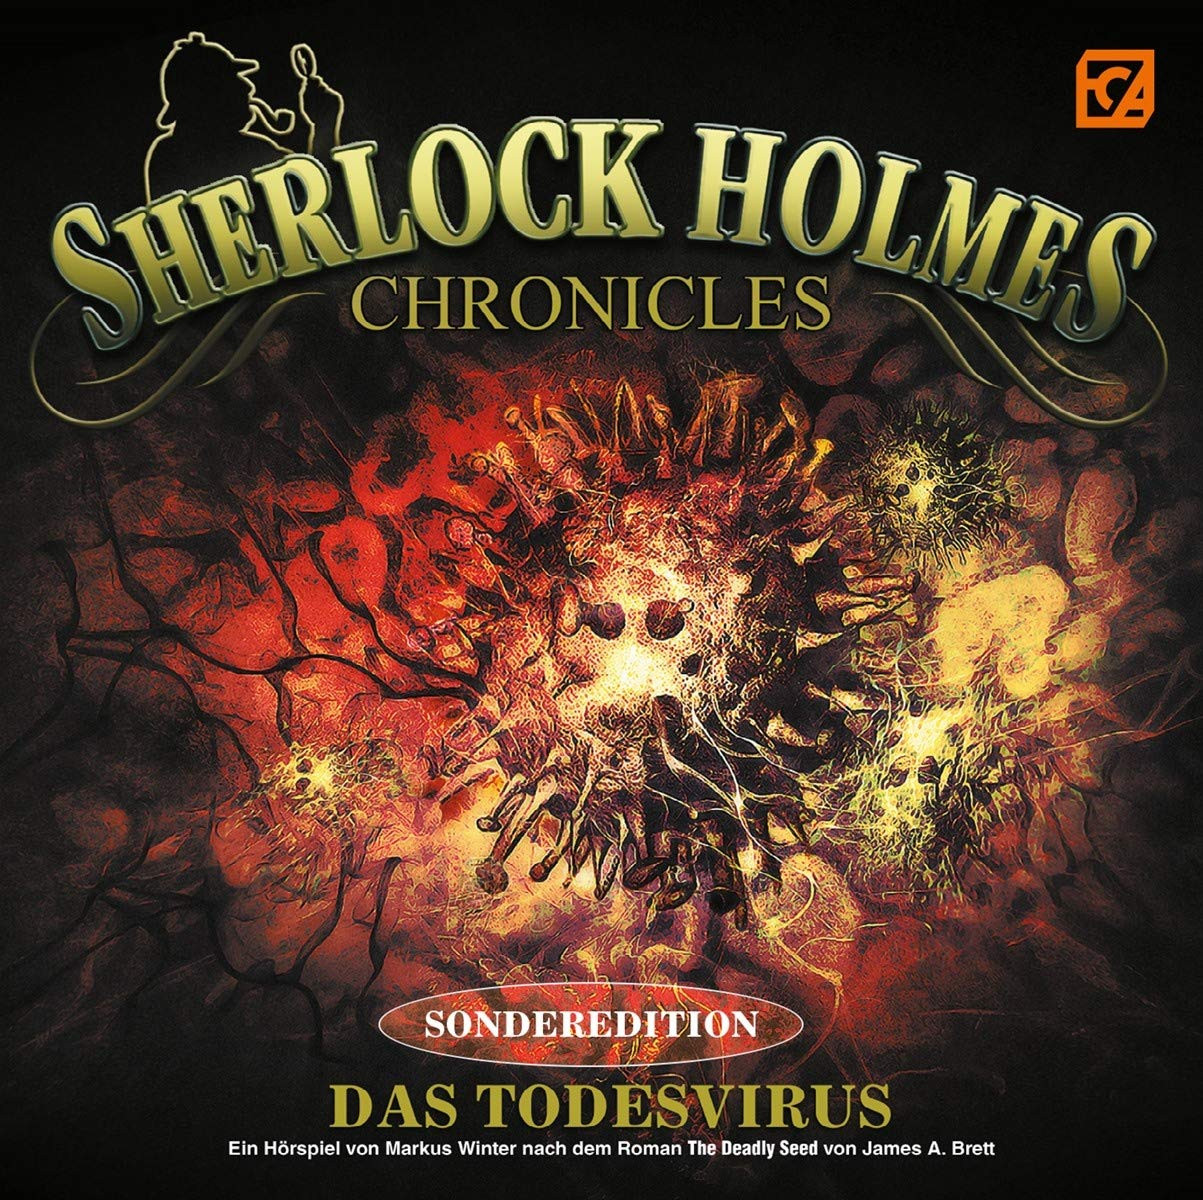 Sherlock Holmes Chronicles - Sonderedition: Das Todesvirus